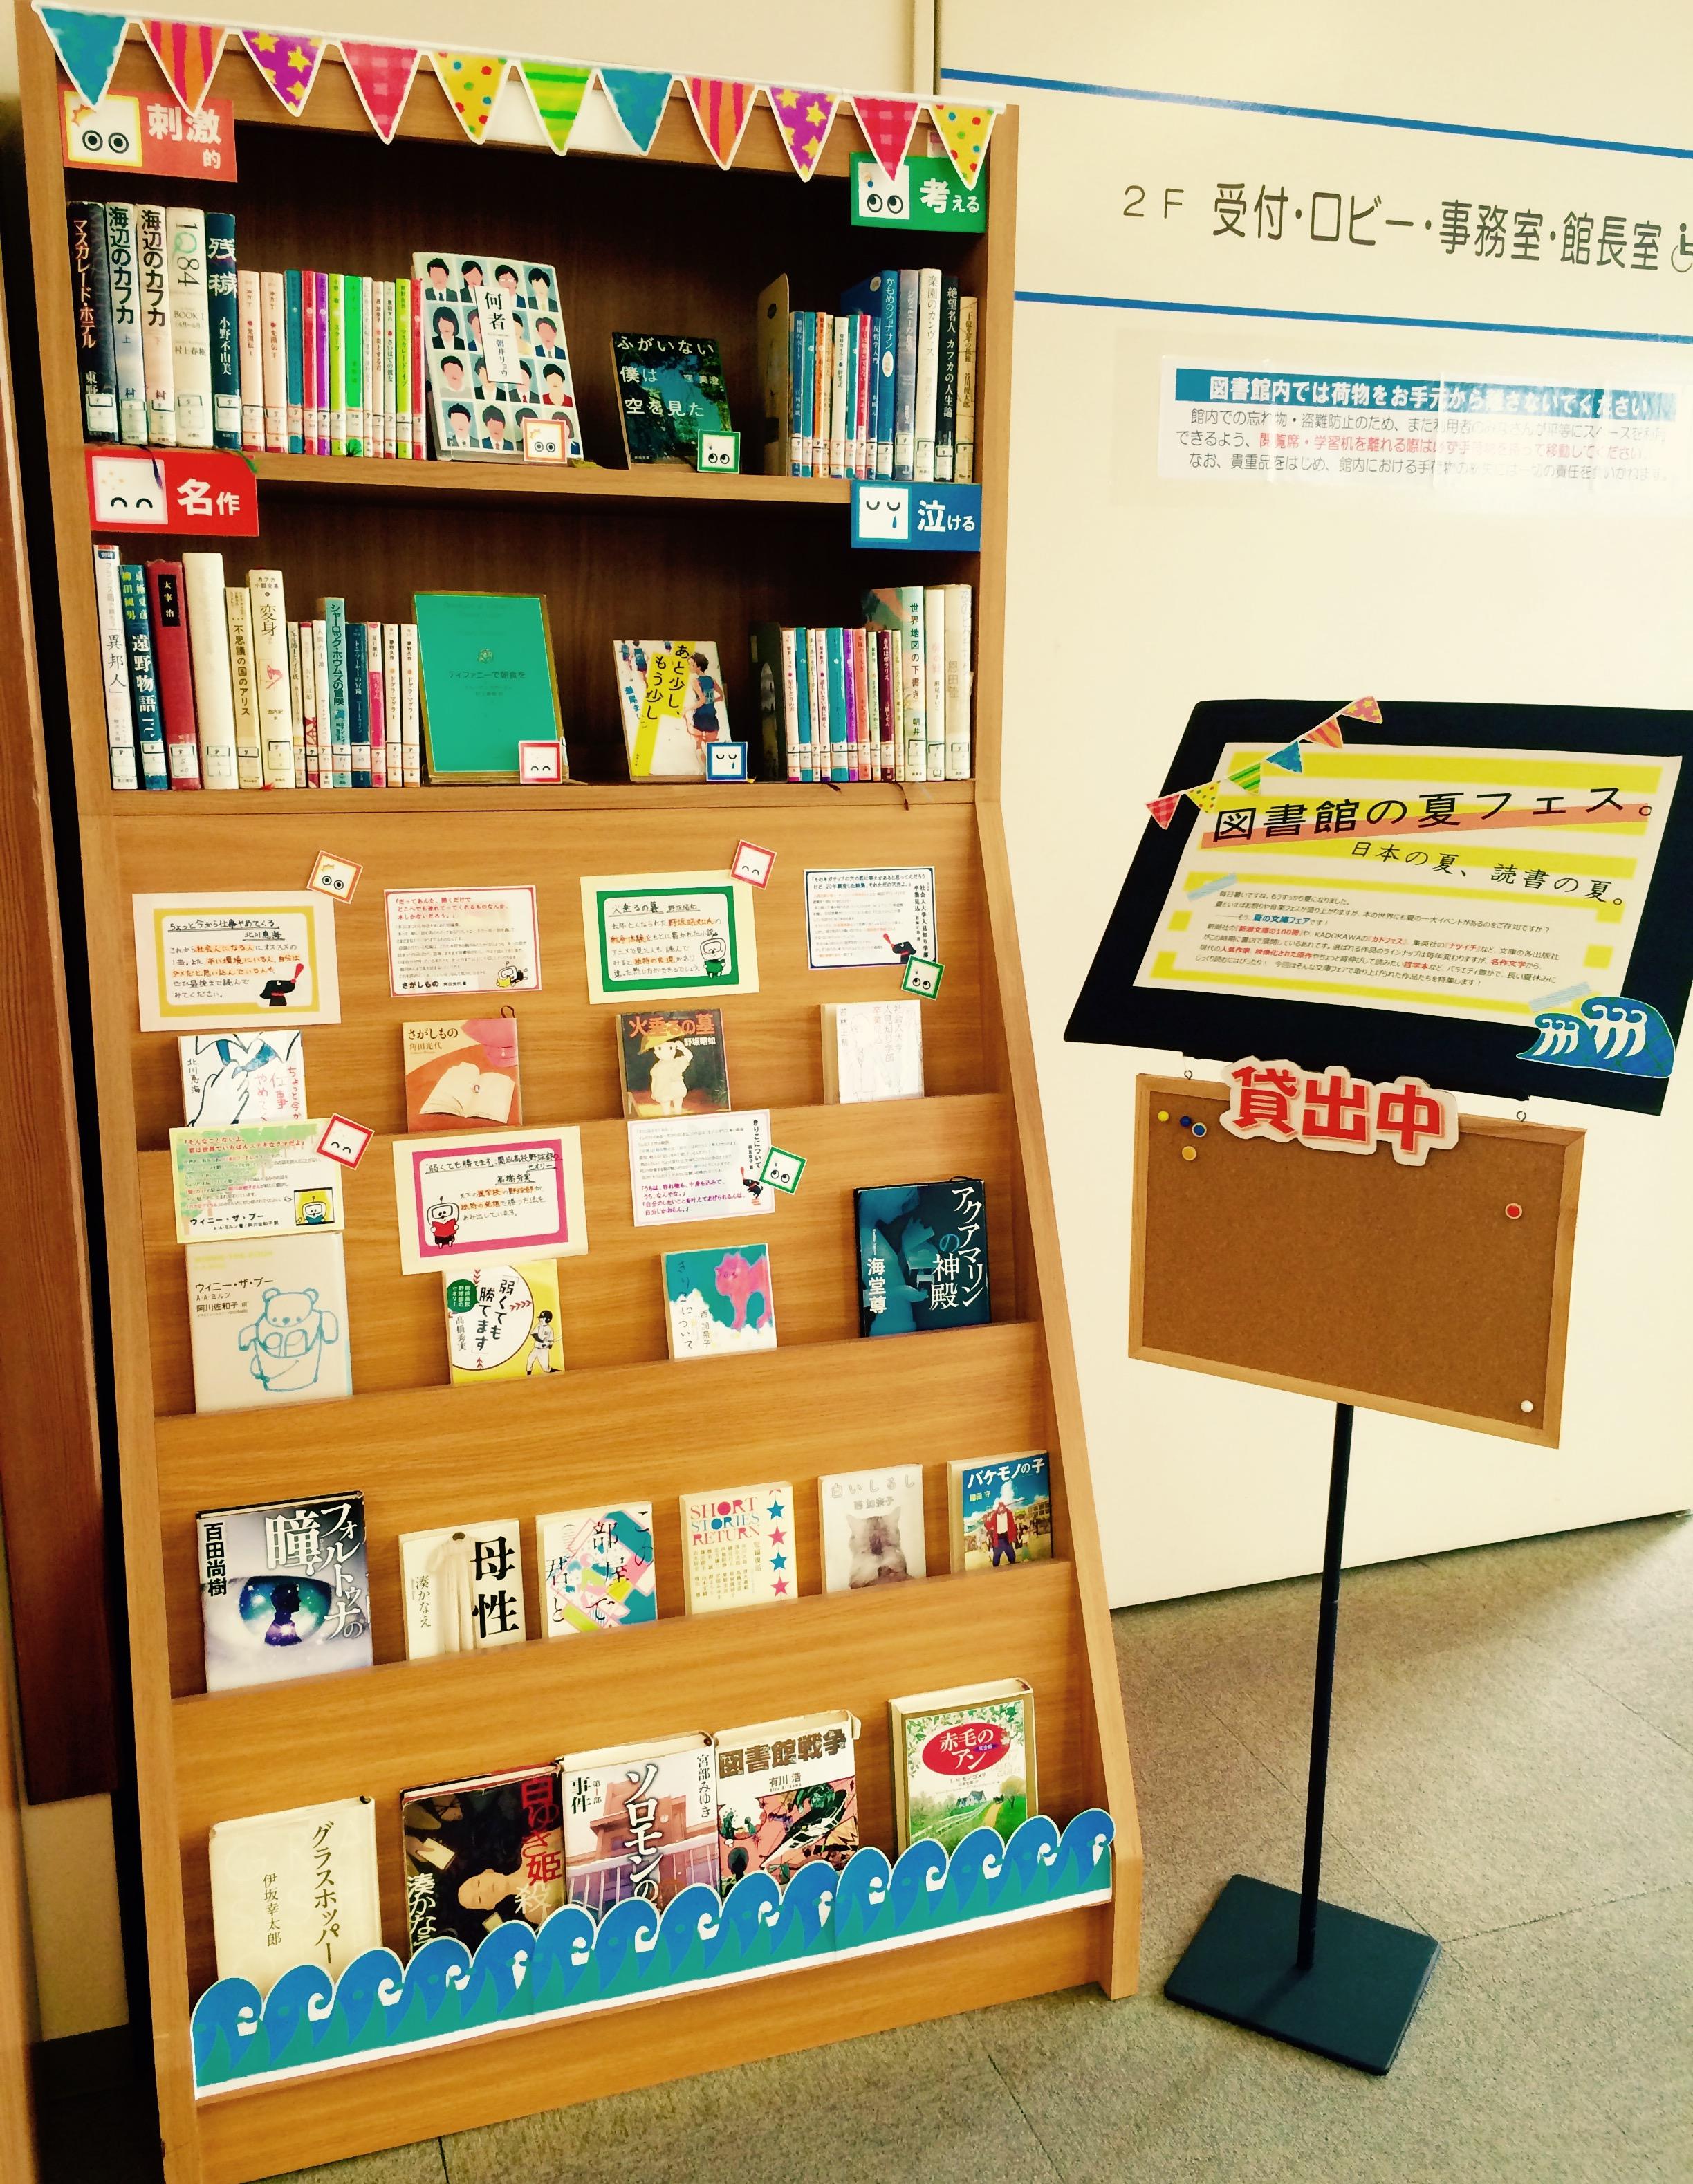 http://www.shotoku.ac.jp/facilities/library/hashima/images/%E5%85%A8%E4%BD%93.jpg